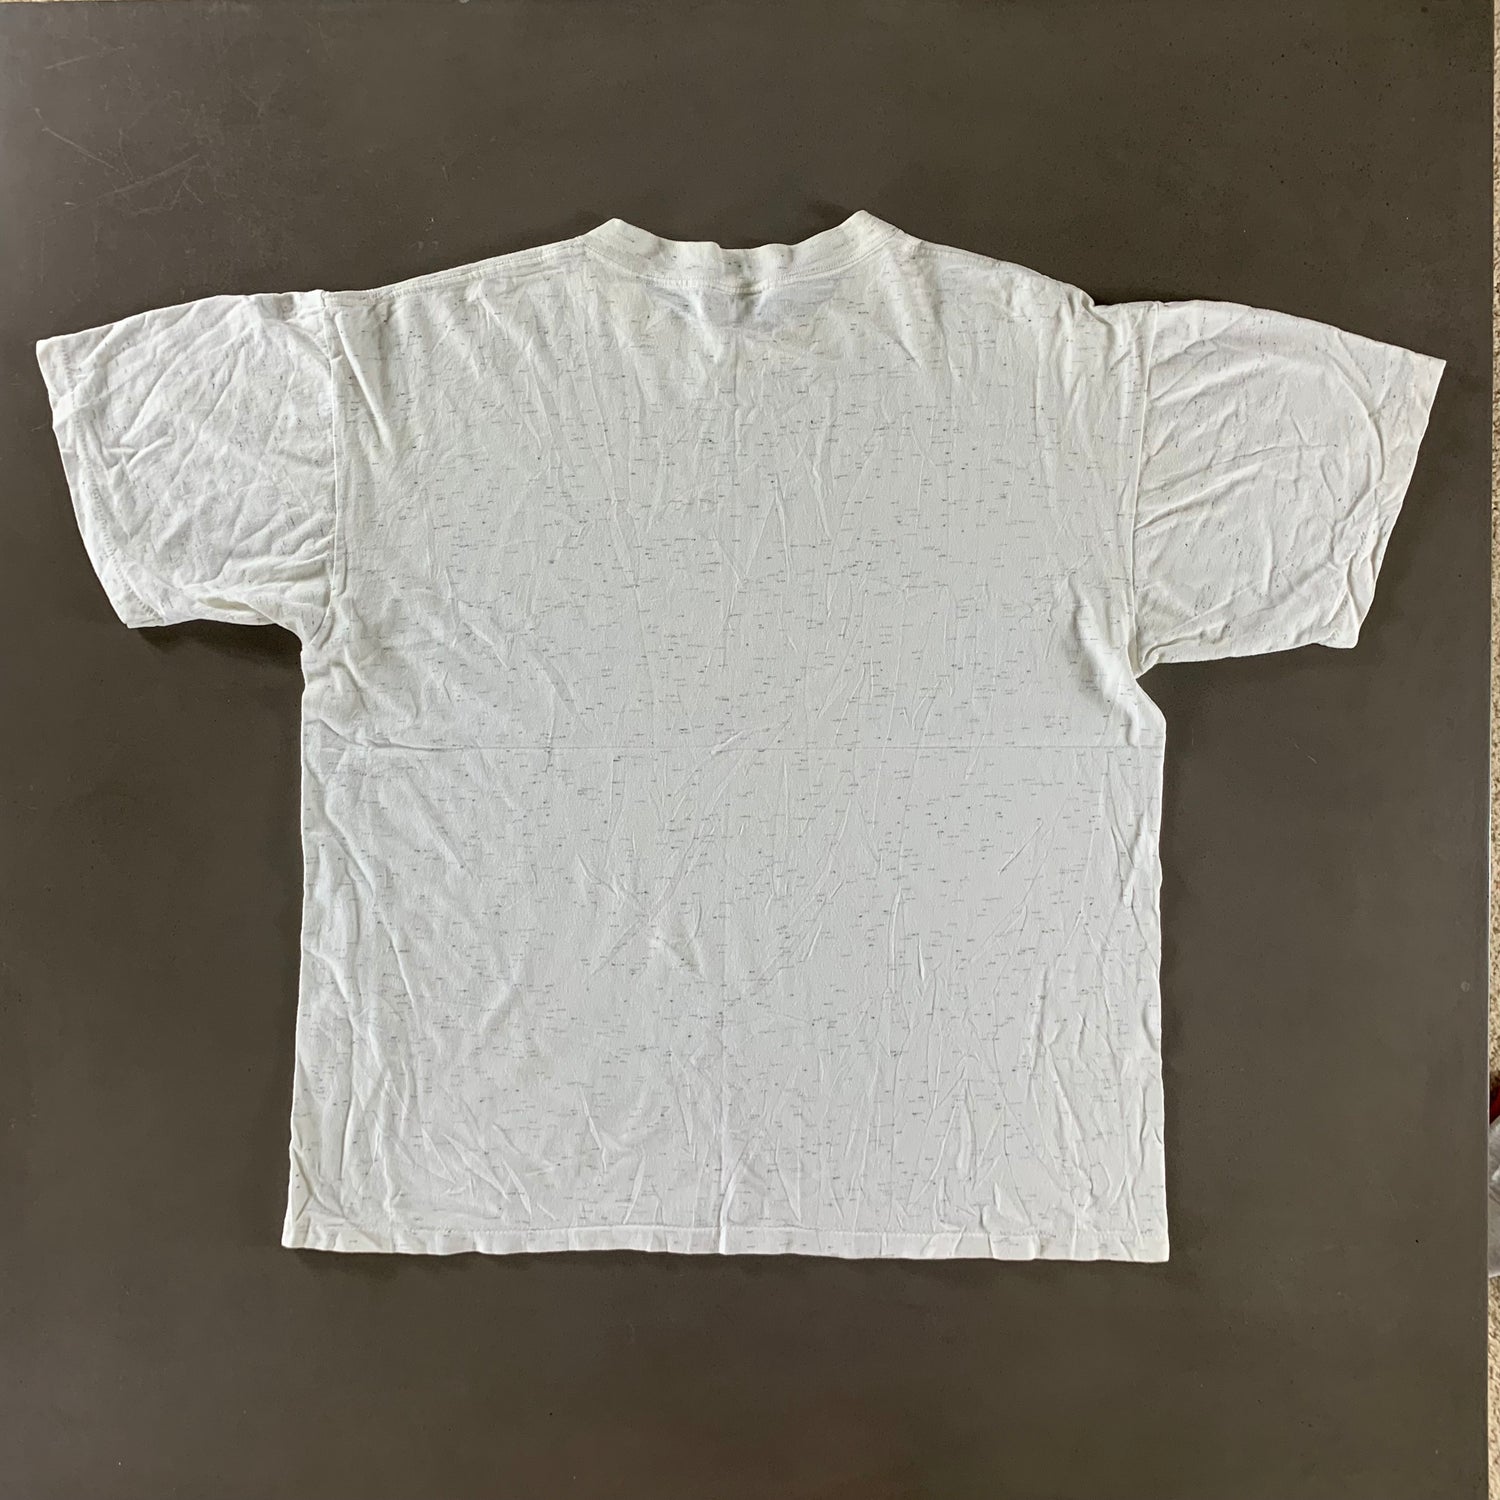 Vintage 1993 Arkansas T-shirt size XL